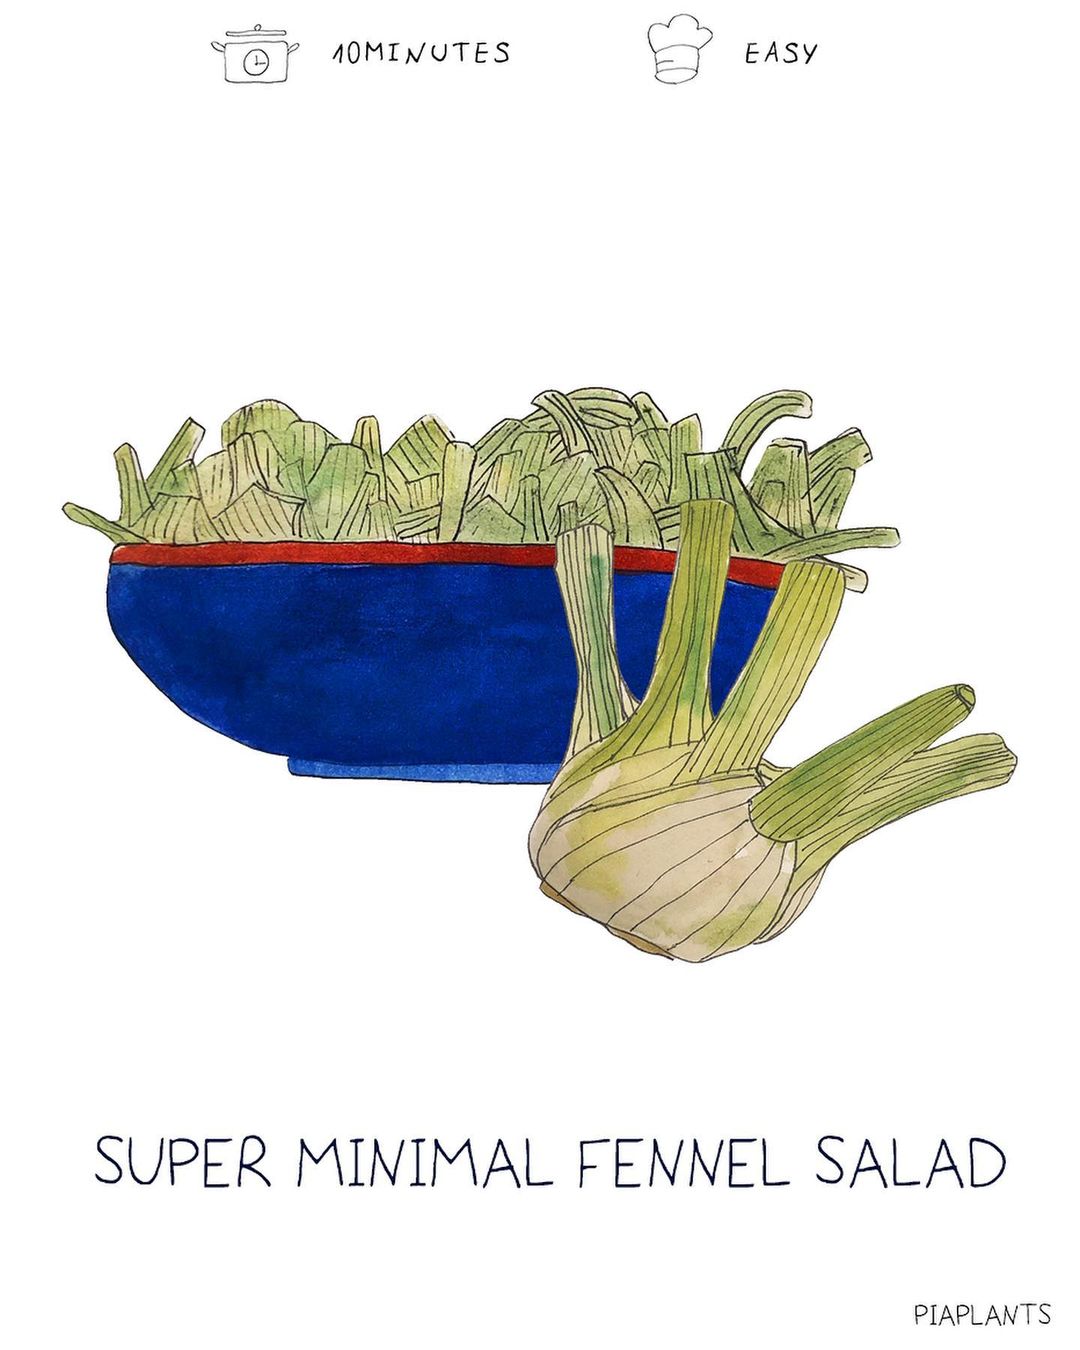 Super Minimal Fennel Salad